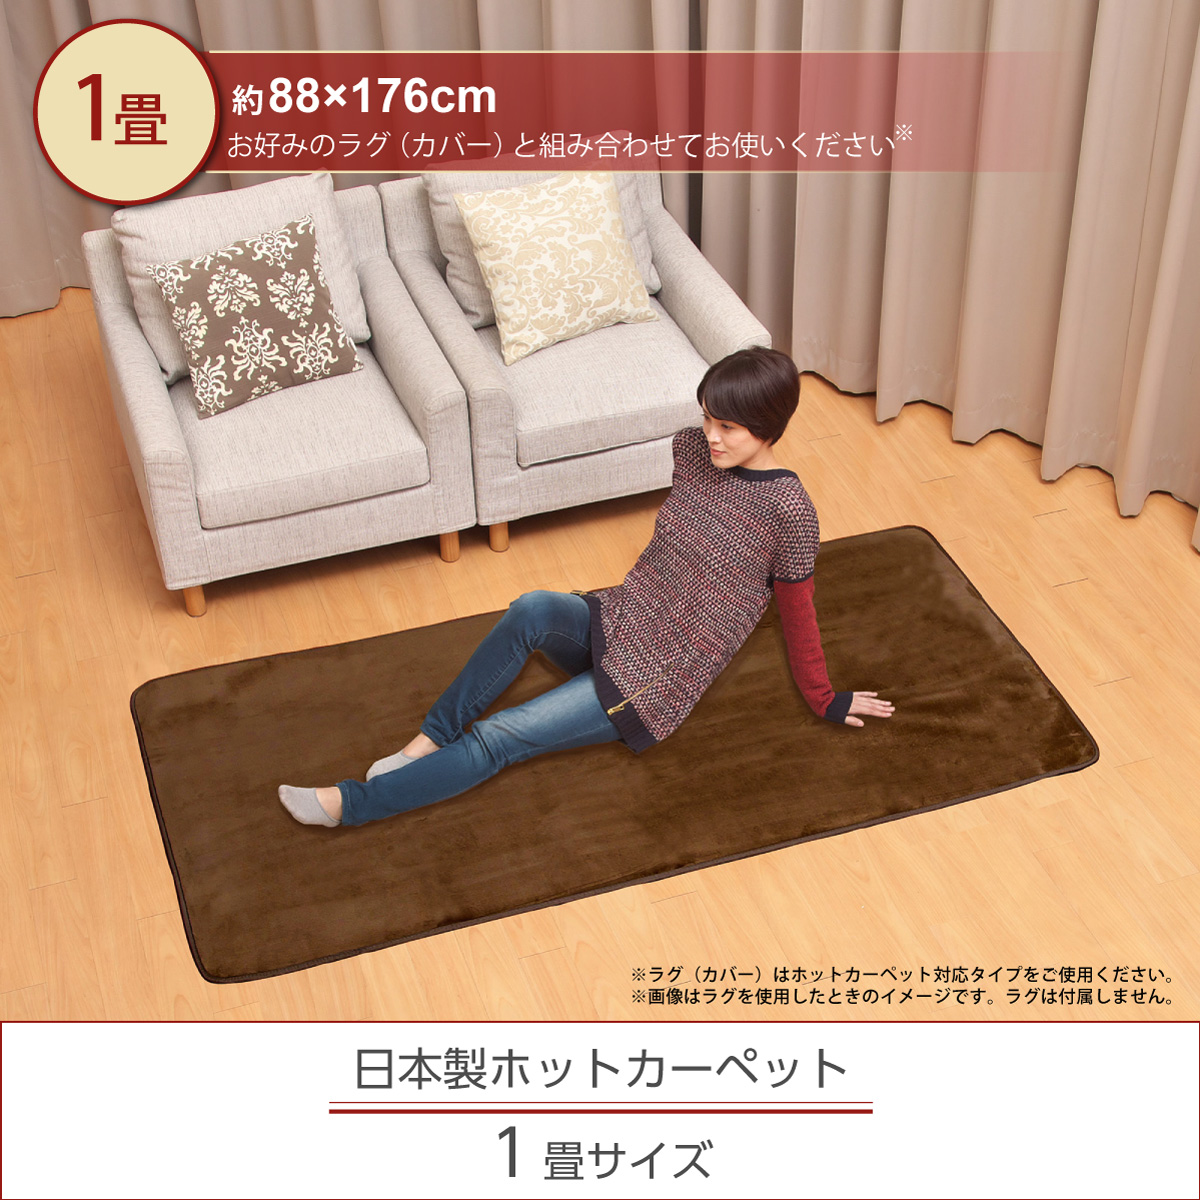 日本製 ホットカーペット 1畳 88cm×176cm 長方形 コンパクト収納 